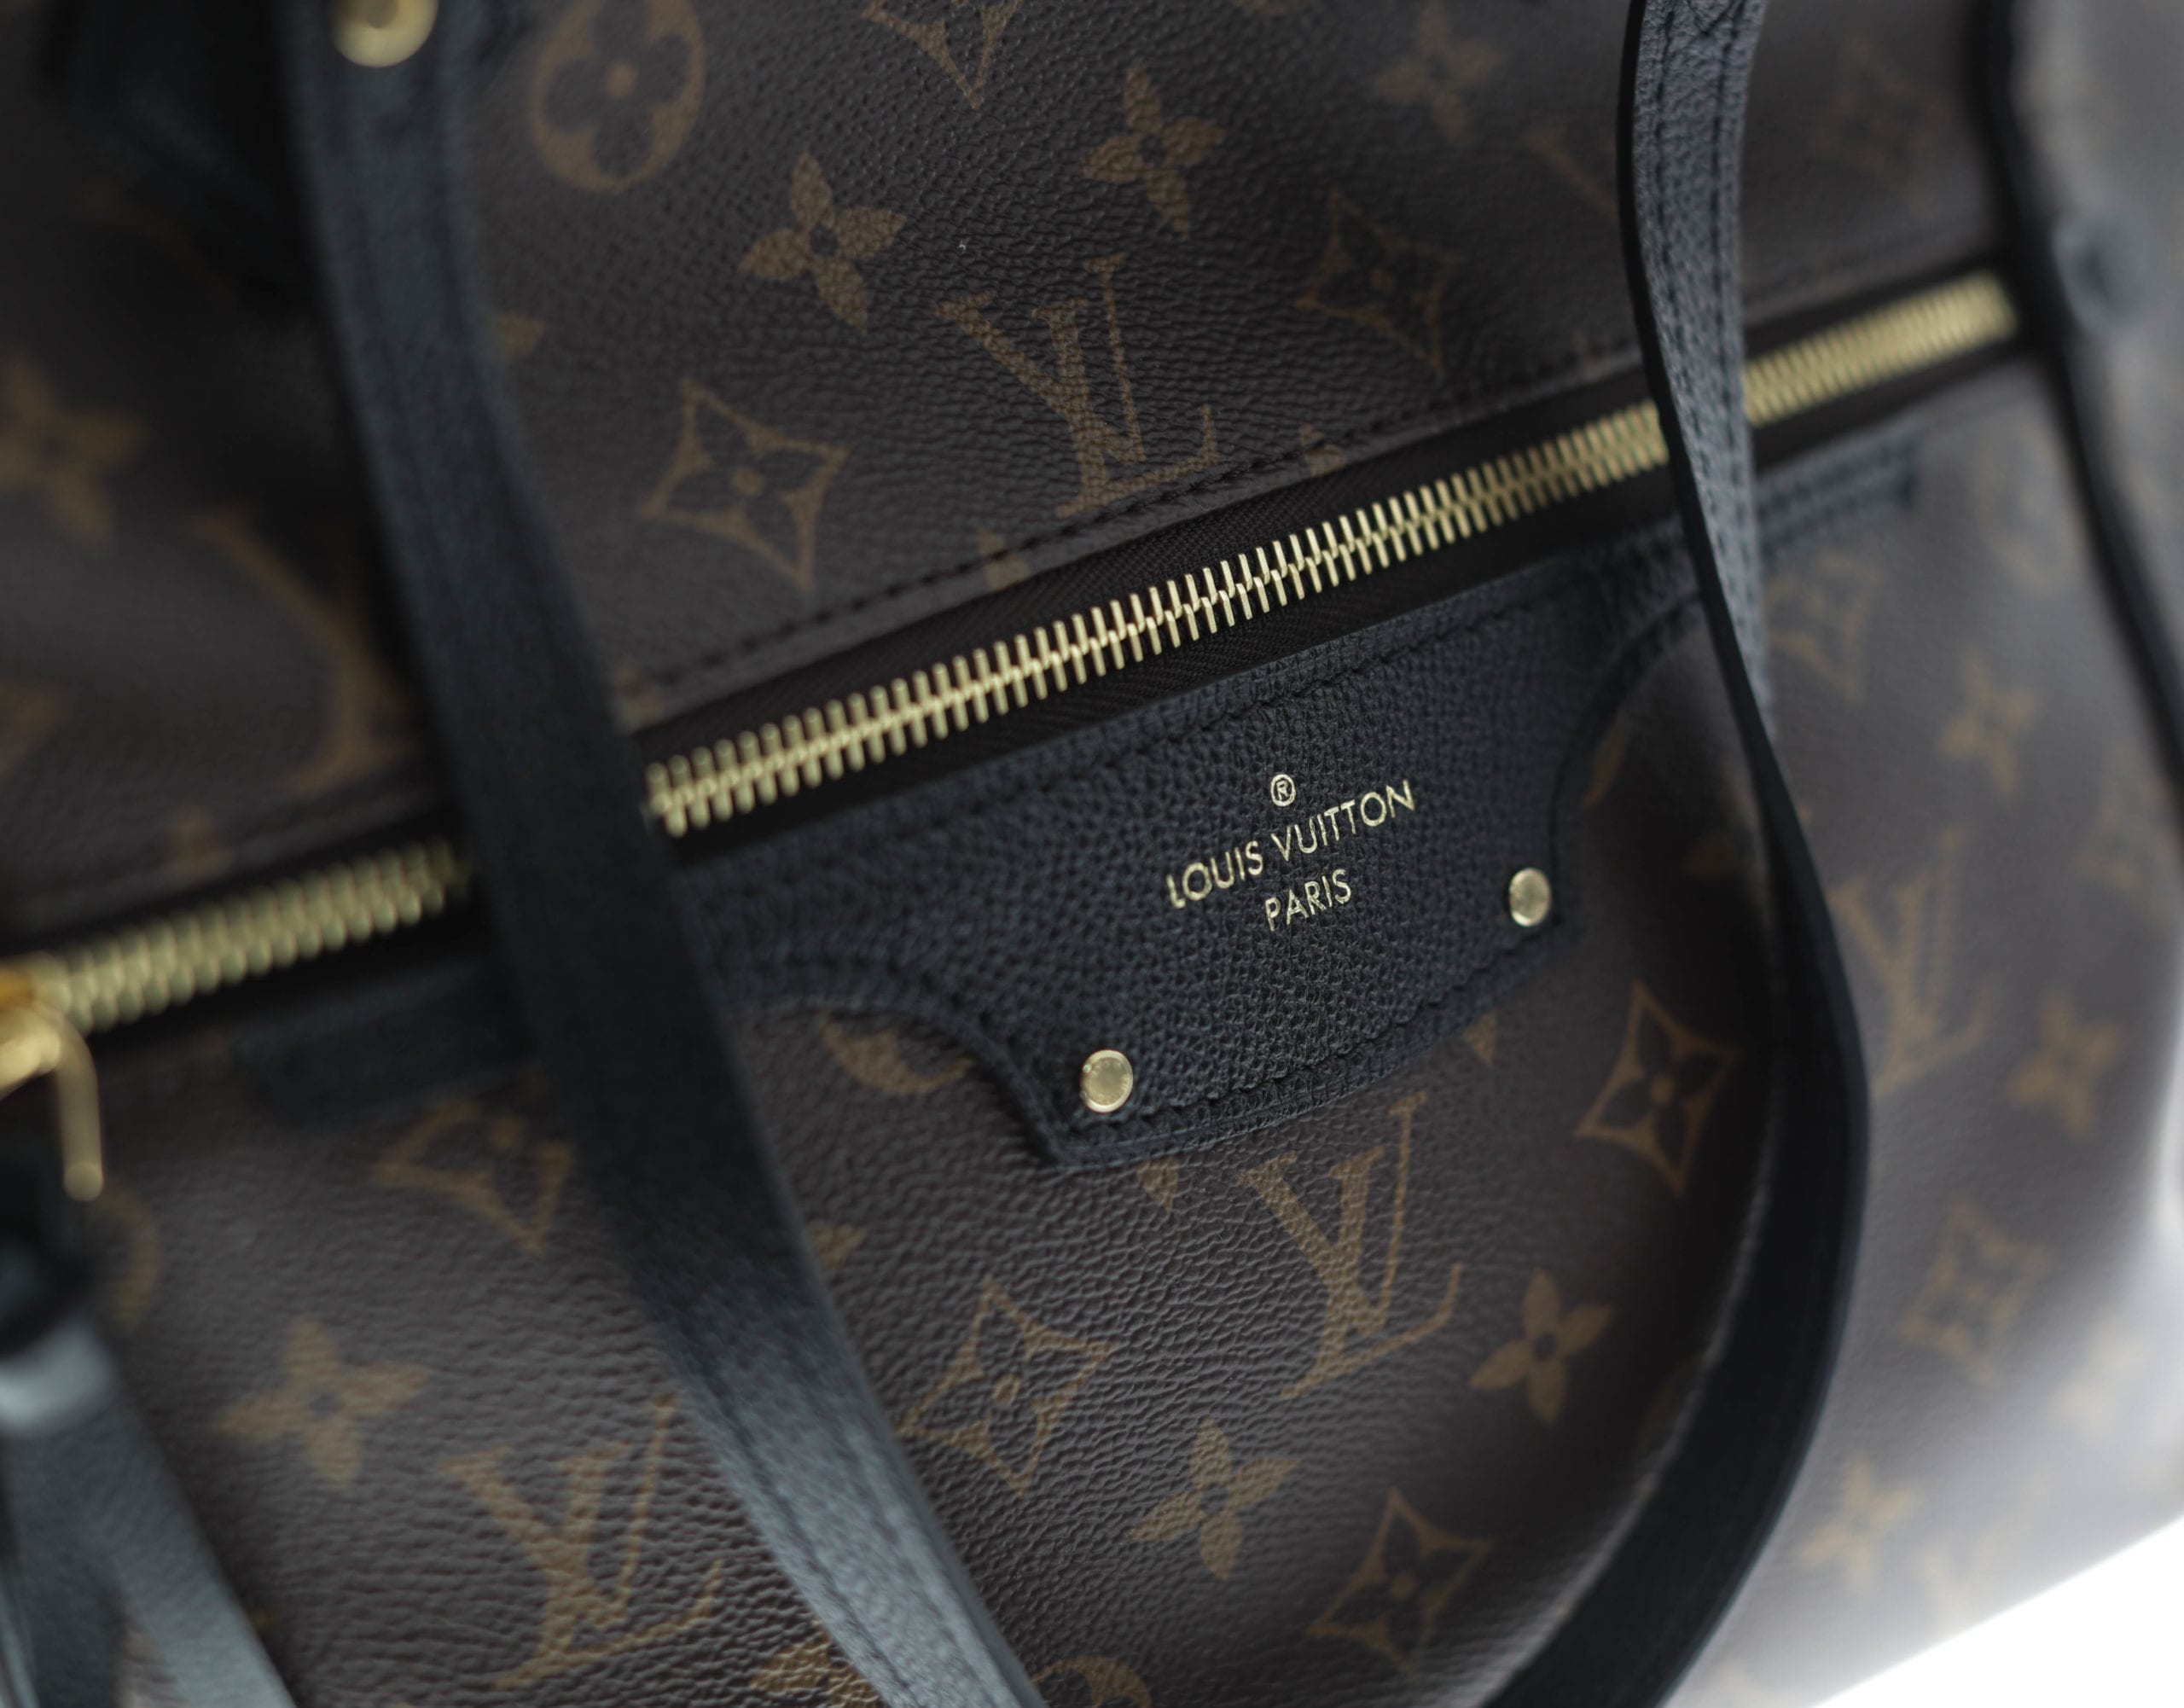 Louis Vuitton Pallas Black Monogram bag - The Vintage Contessa & Times Past | Pre-Owned Luxury ...